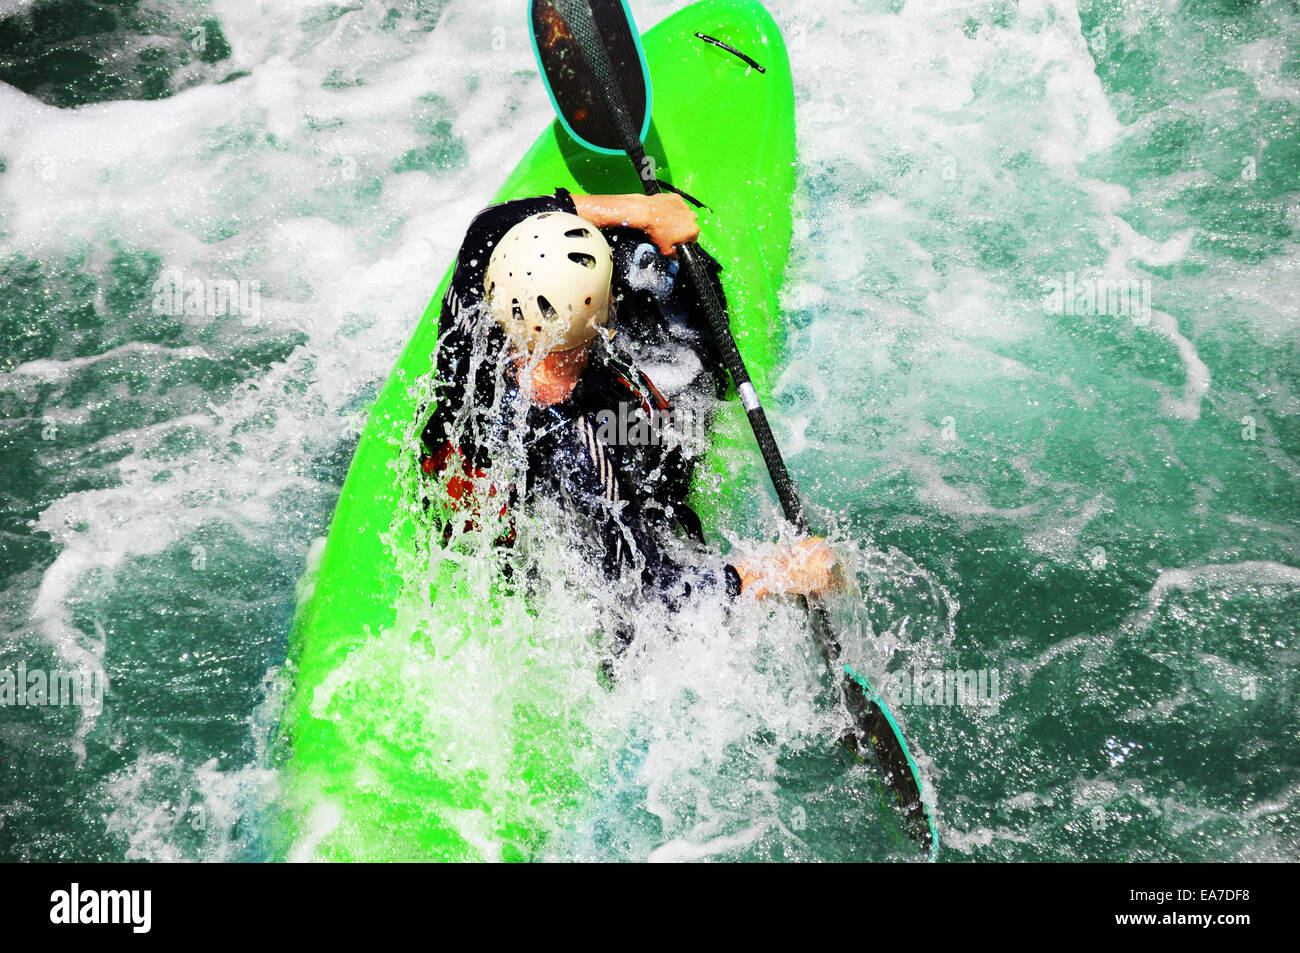 Kayak como extrema diversión y deporte. Foto de stock